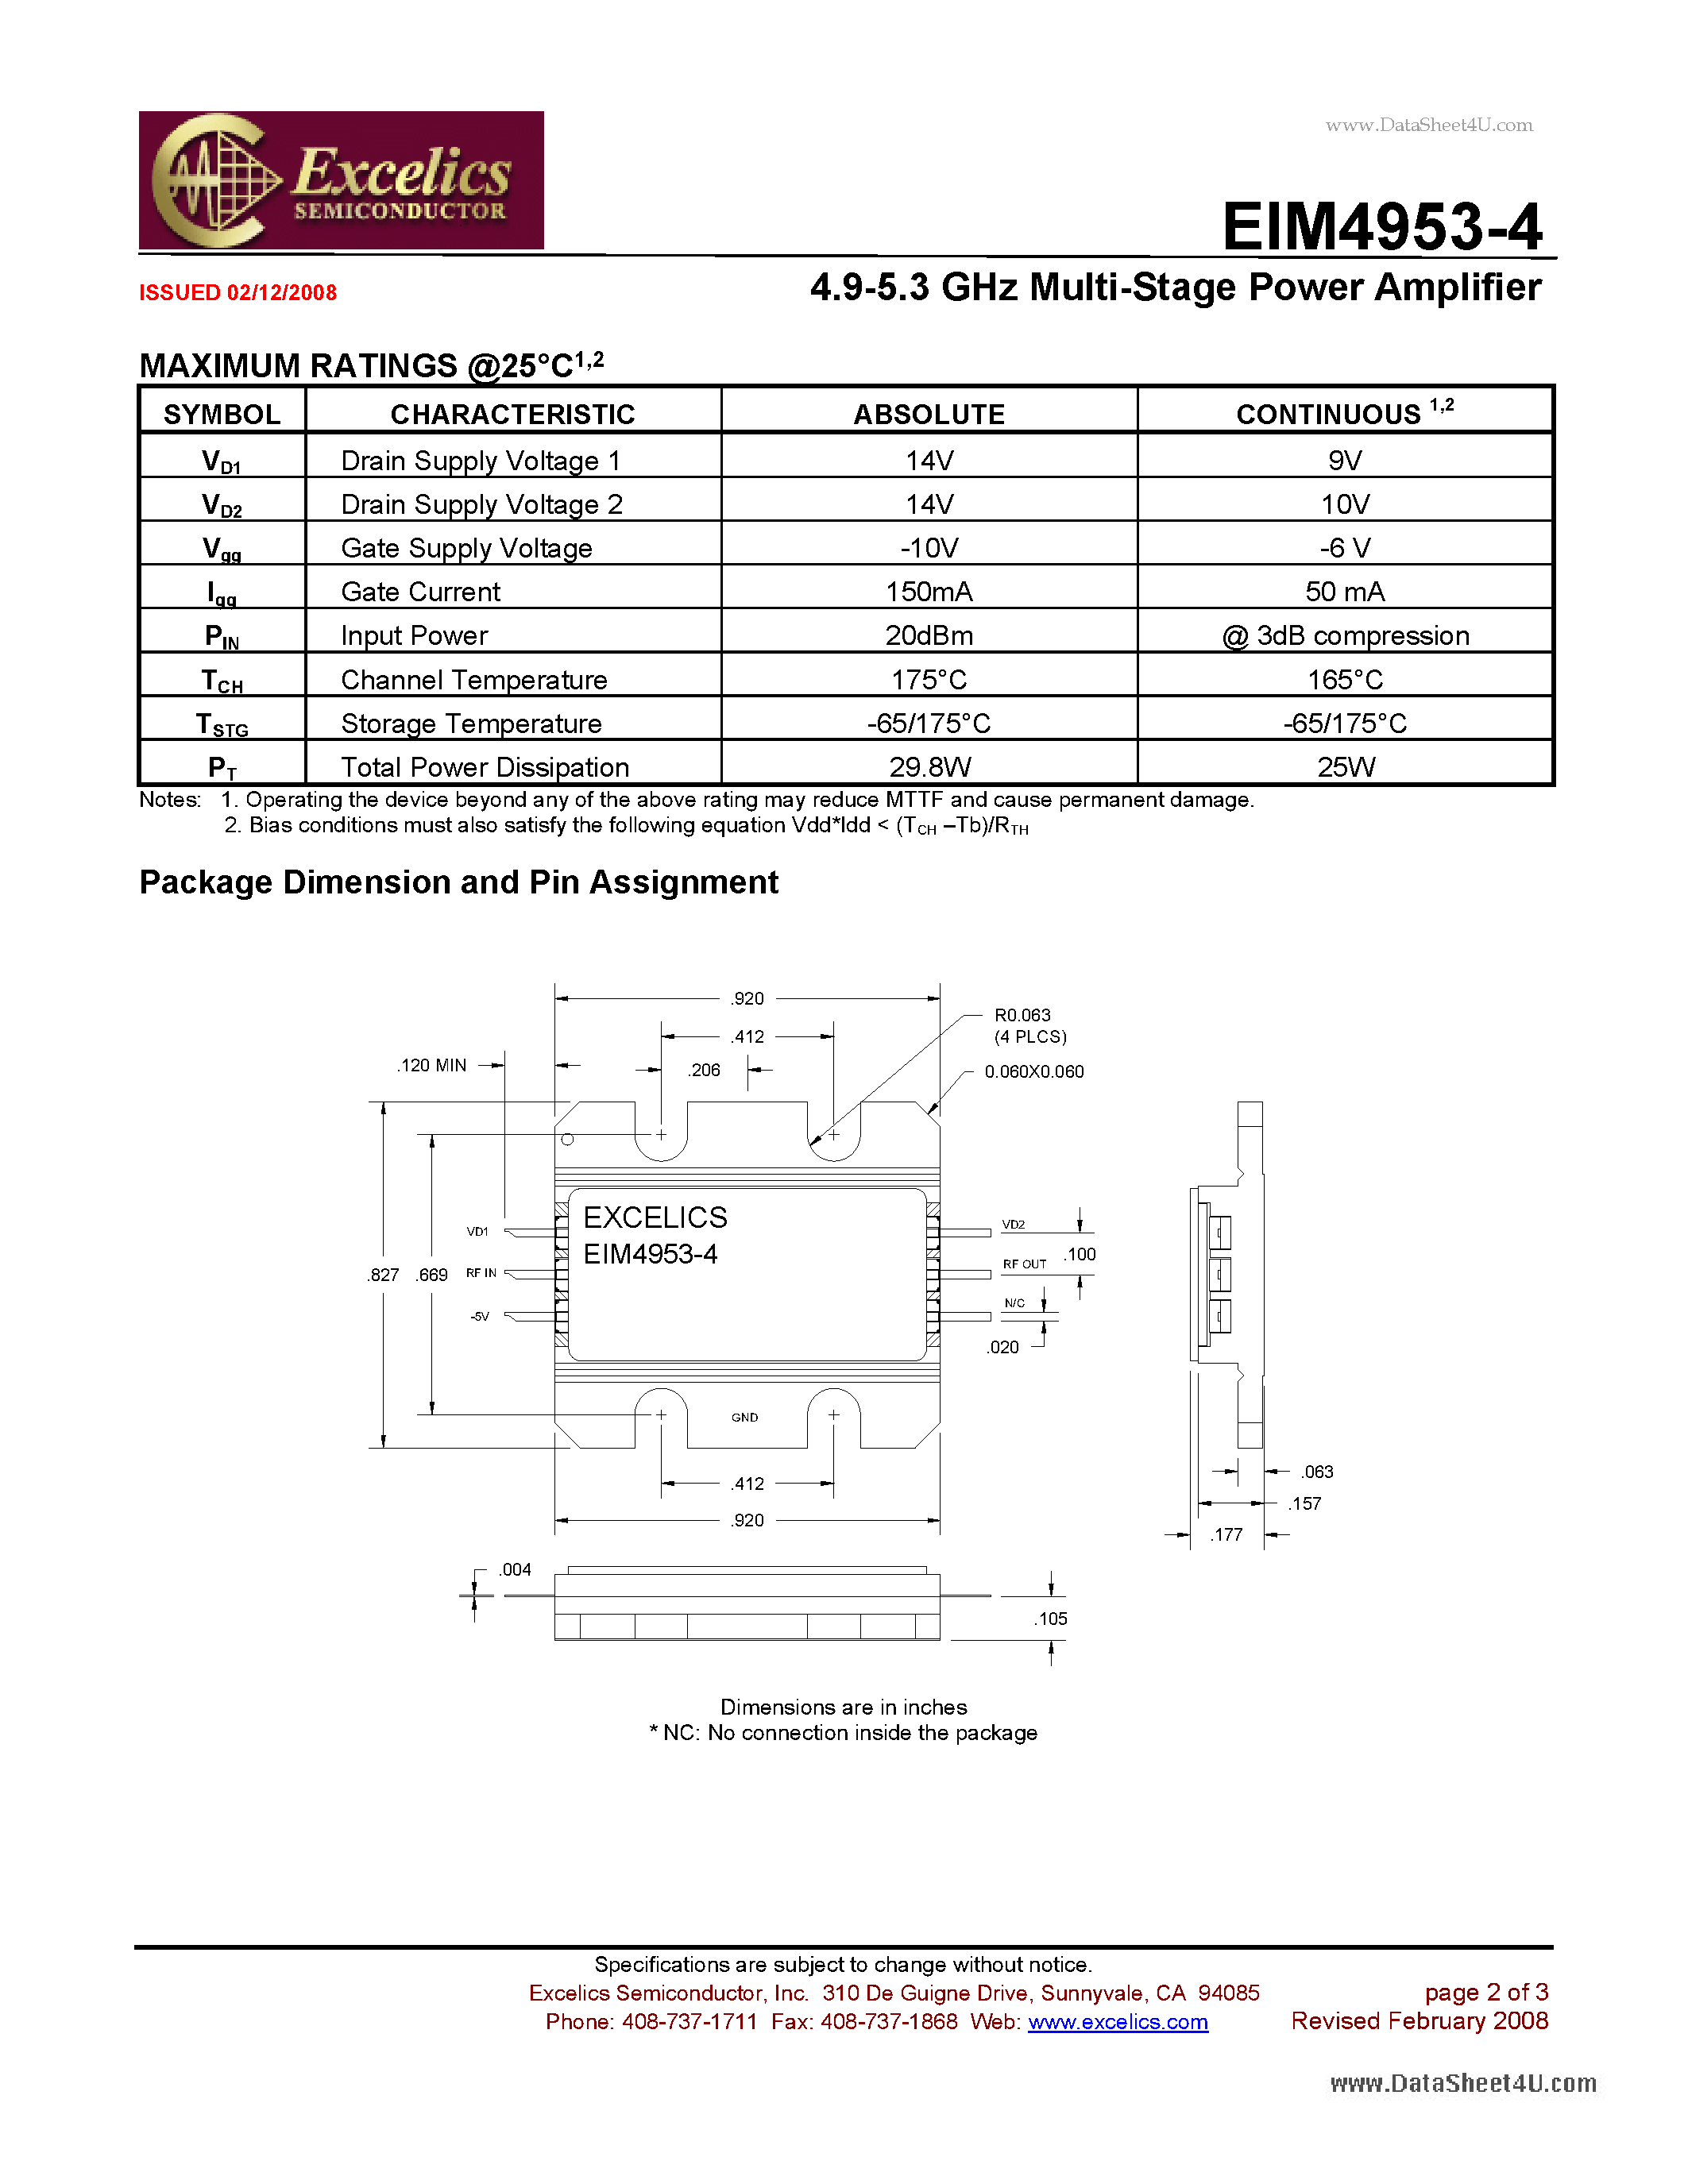 Datasheet EIM4953-4 - 4.9-5.3 GHz Multi-Stage Power Amplifier page 2